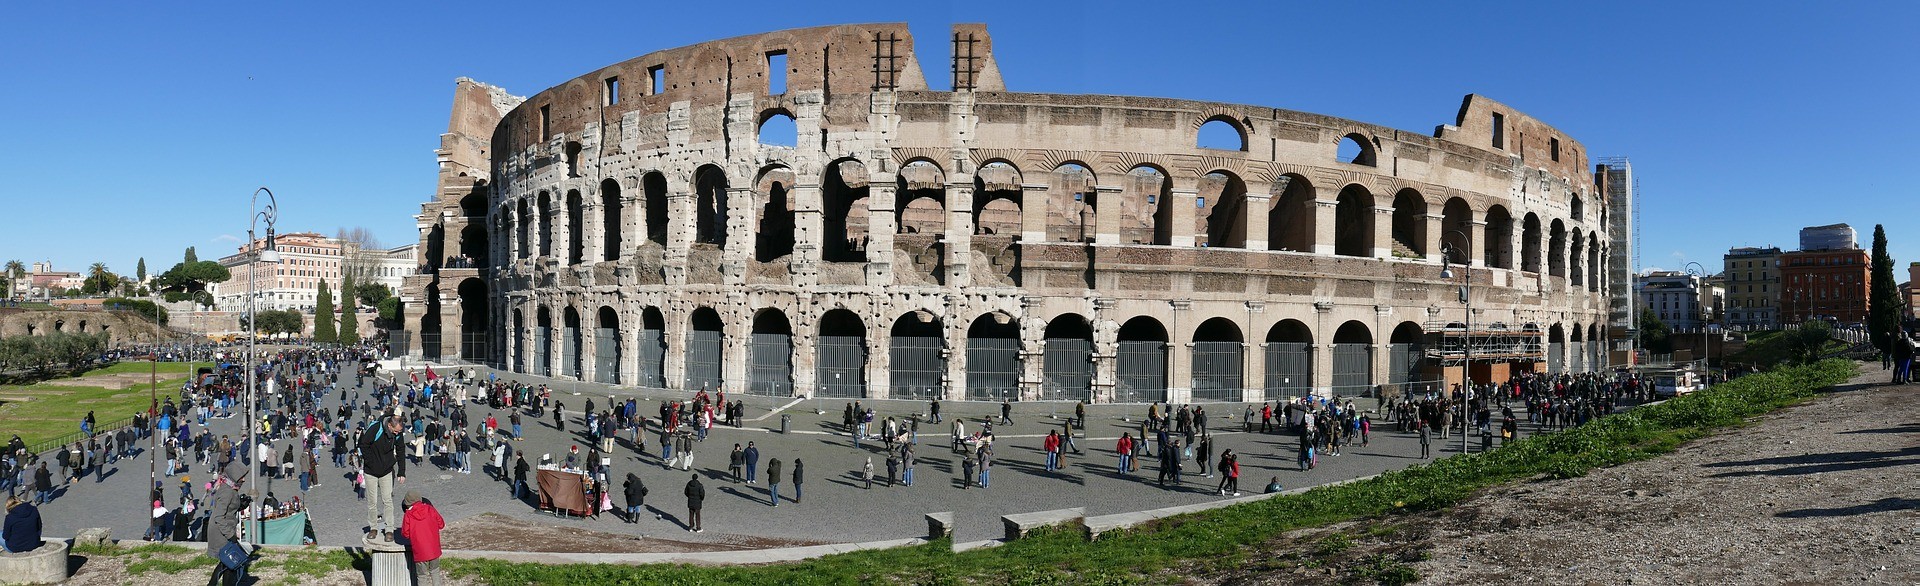 Koloseum w Rzymie - Włochy